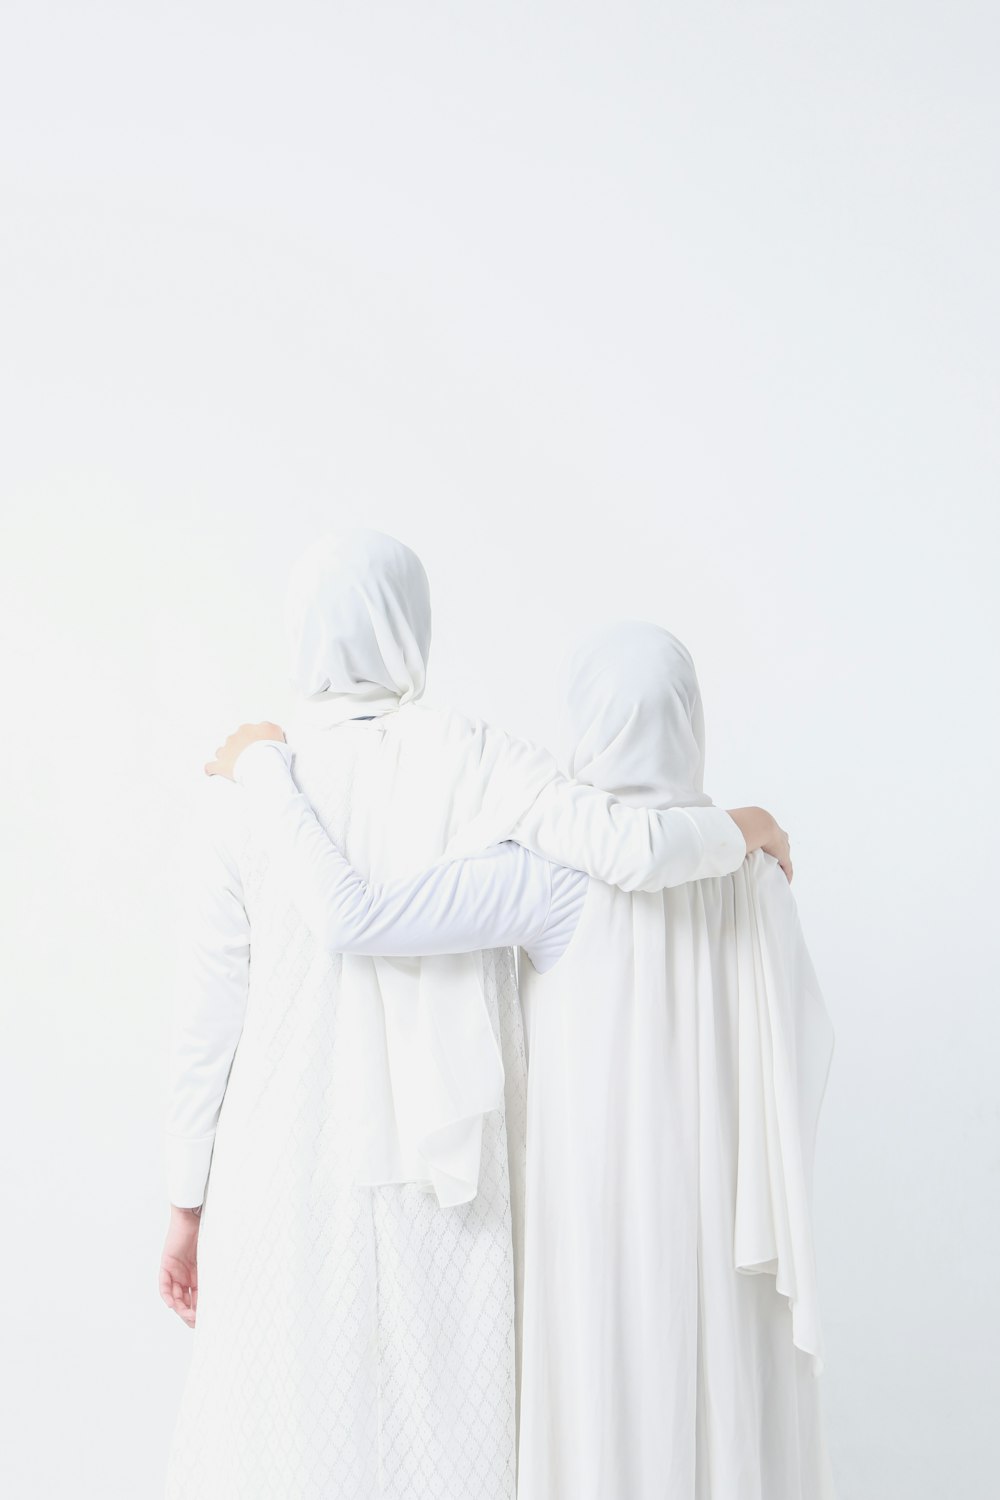 Zwei weiß gekleidete Frauen stehen nebeneinander